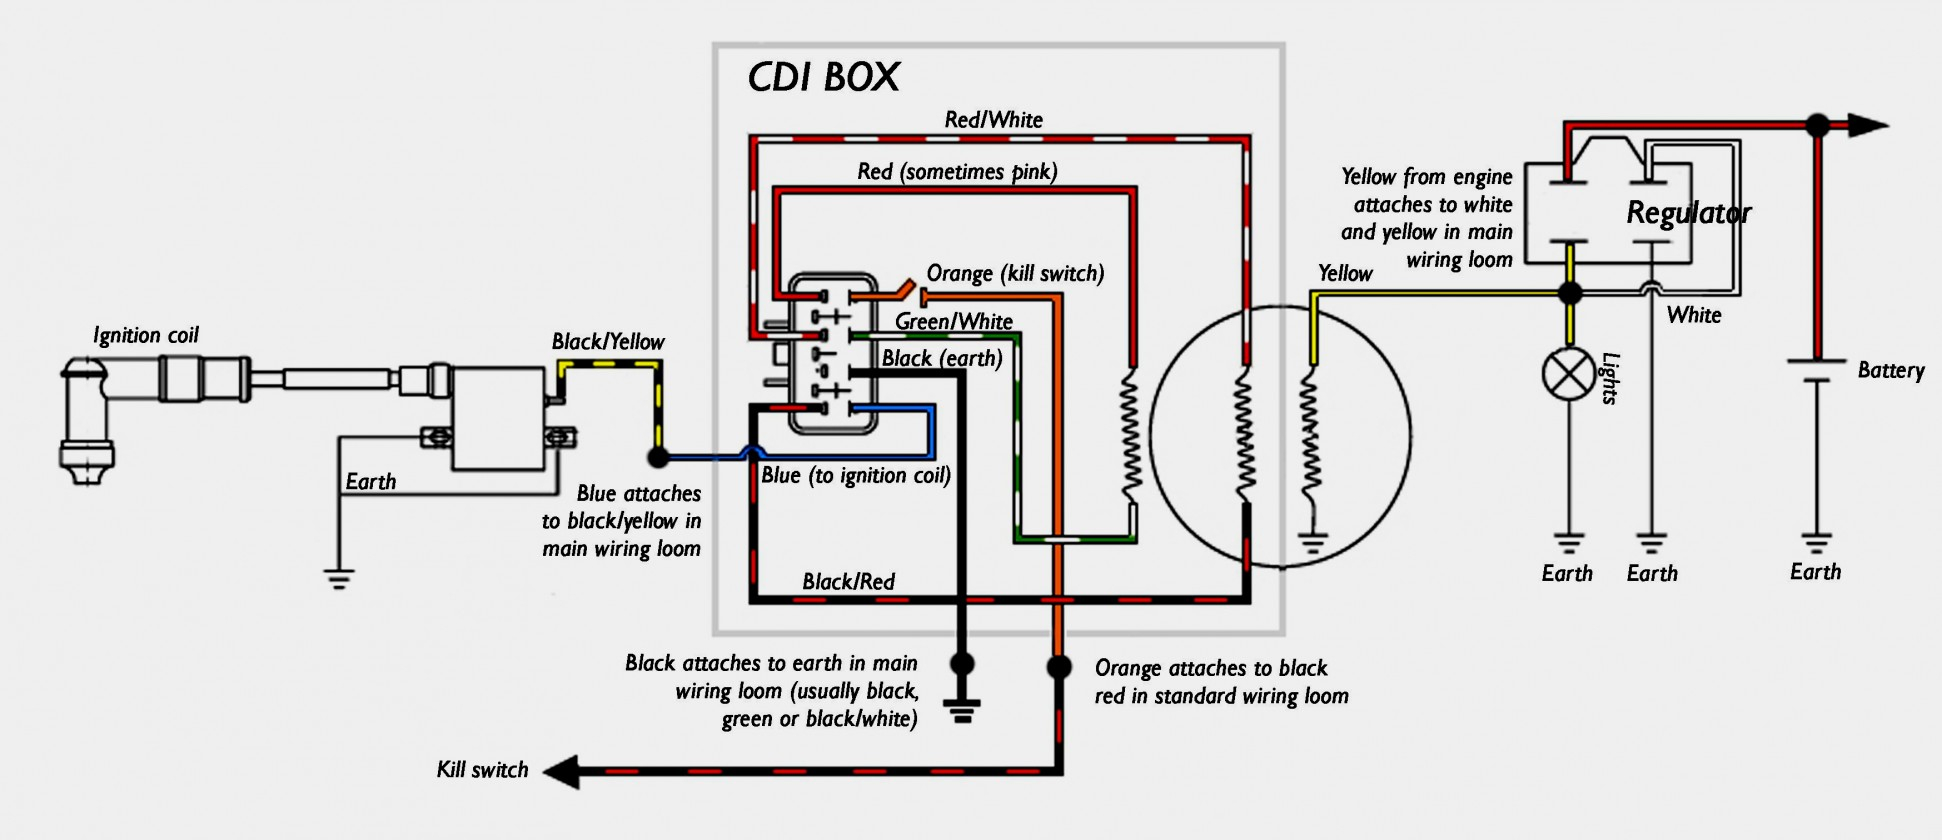 6 Pin Cdi Wiring Diagram | Cadician's Blog